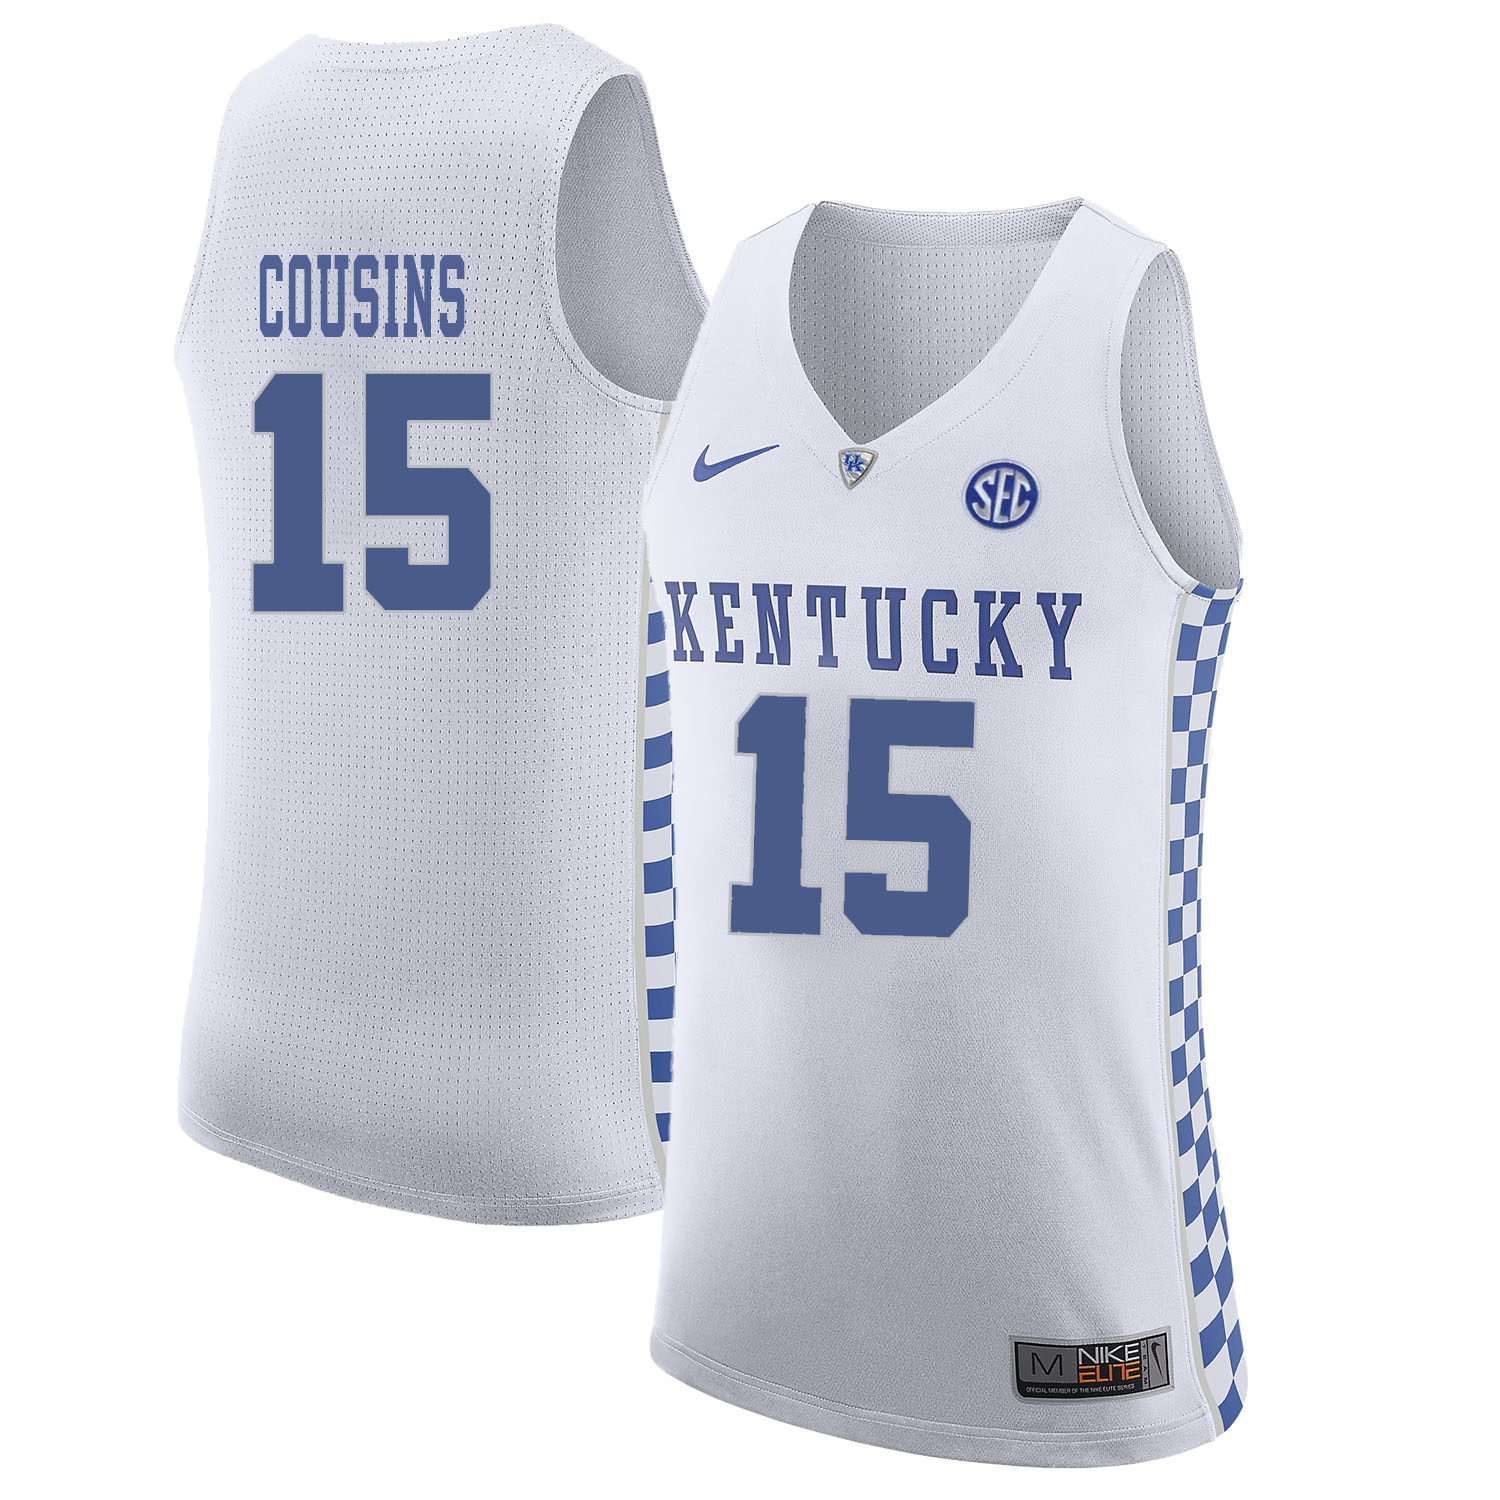 Kentucky Wildcats 15 DeMarcus Cousins White College Basketball Jersey